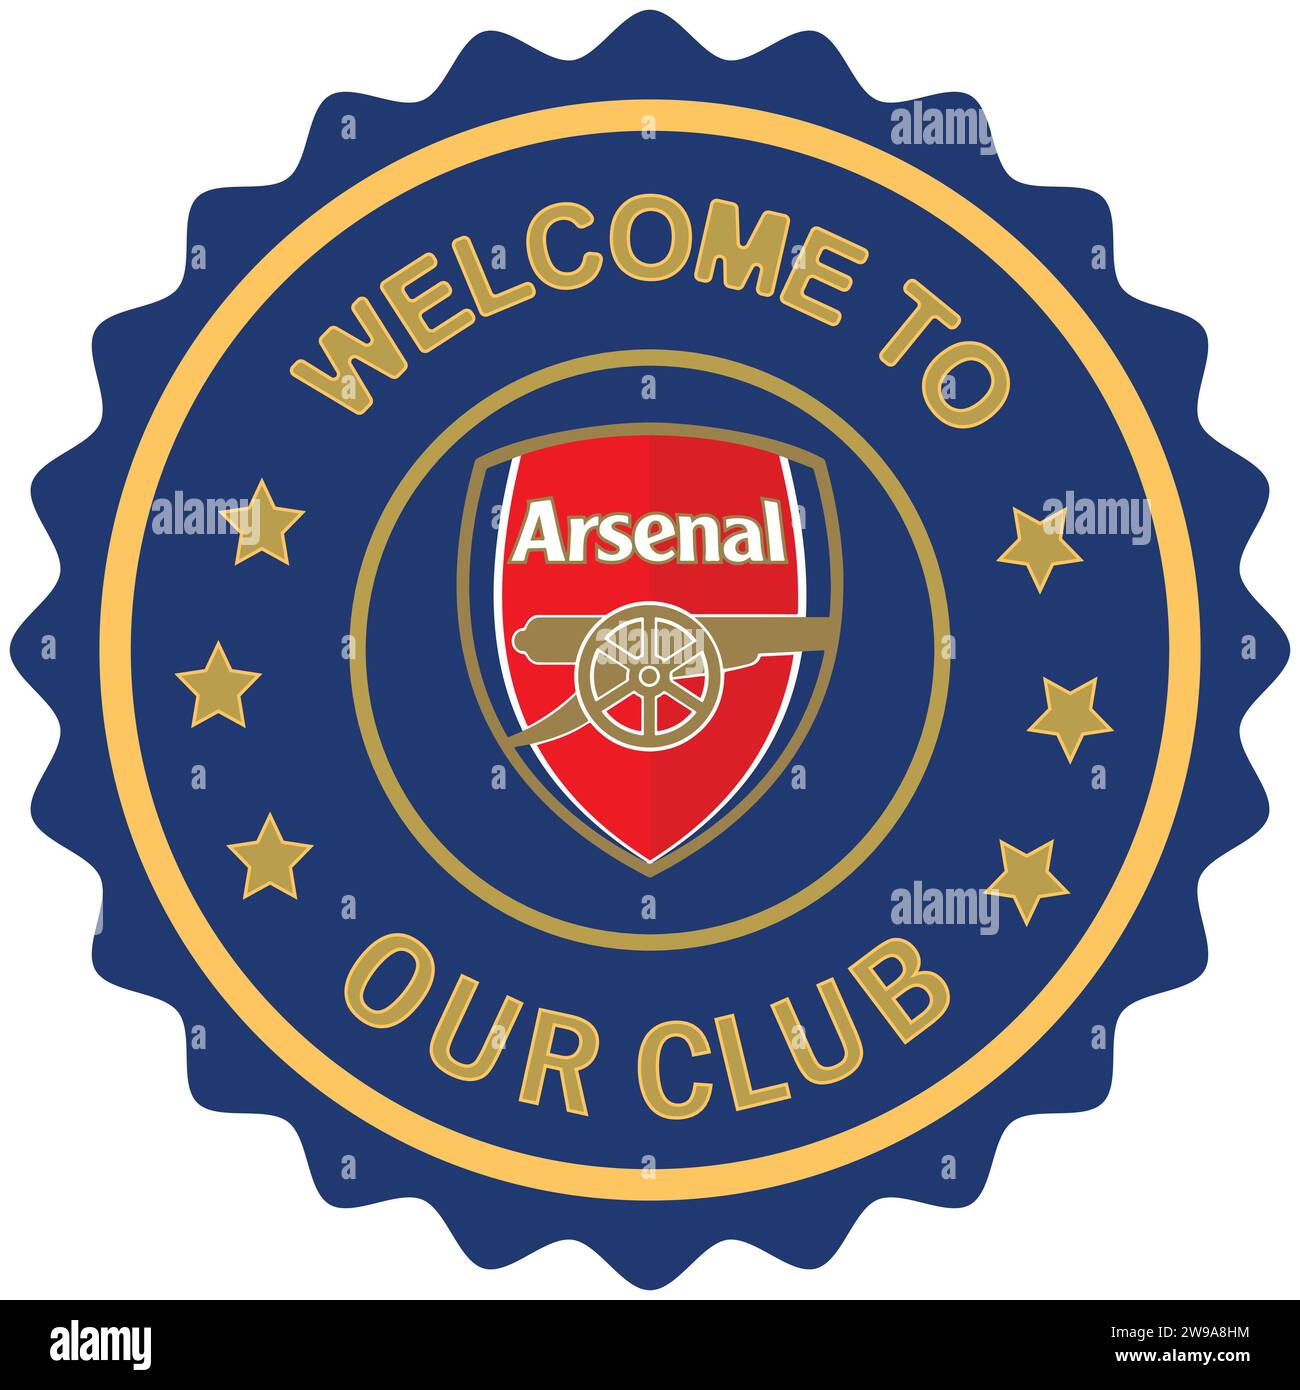 Benvenuto all'Arsenal FC, colorato timbro e sigillo, squadra di calcio professionistica inglese Vector Illustration immagine editabile astratta Illustrazione Vettoriale